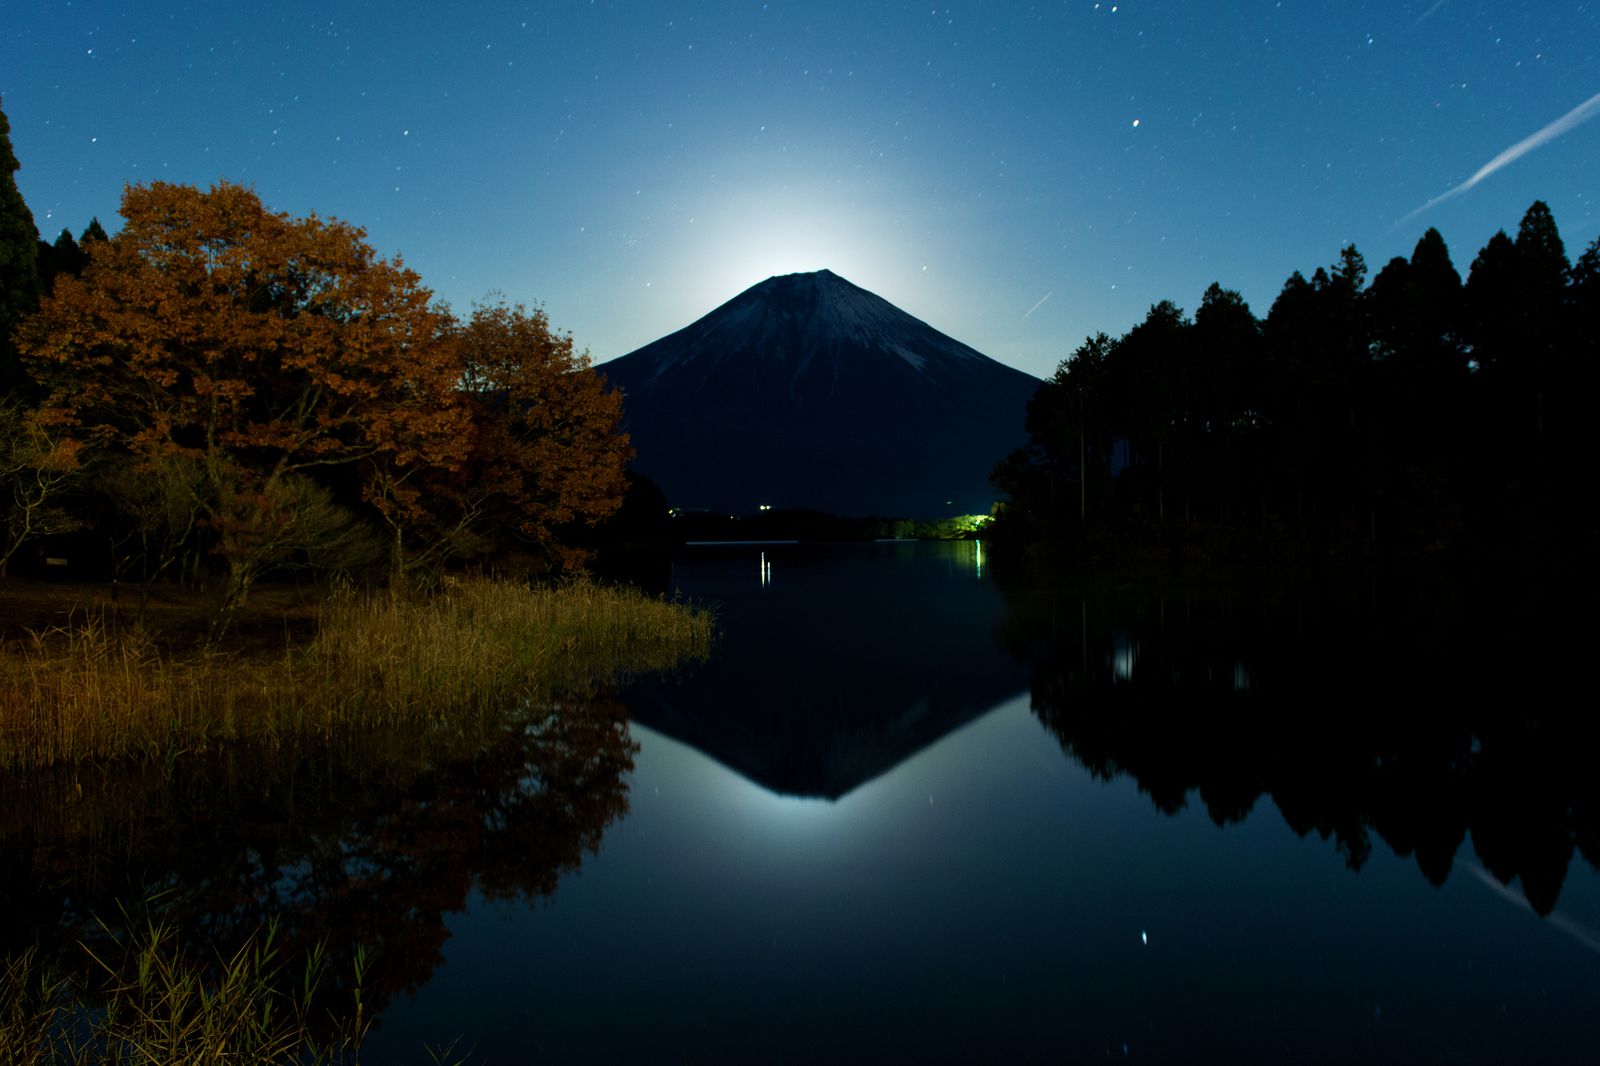 君と見たい景色がここにある 富士山の麓 田貫湖 から見る景色が素敵すぎる Retrip リトリップ